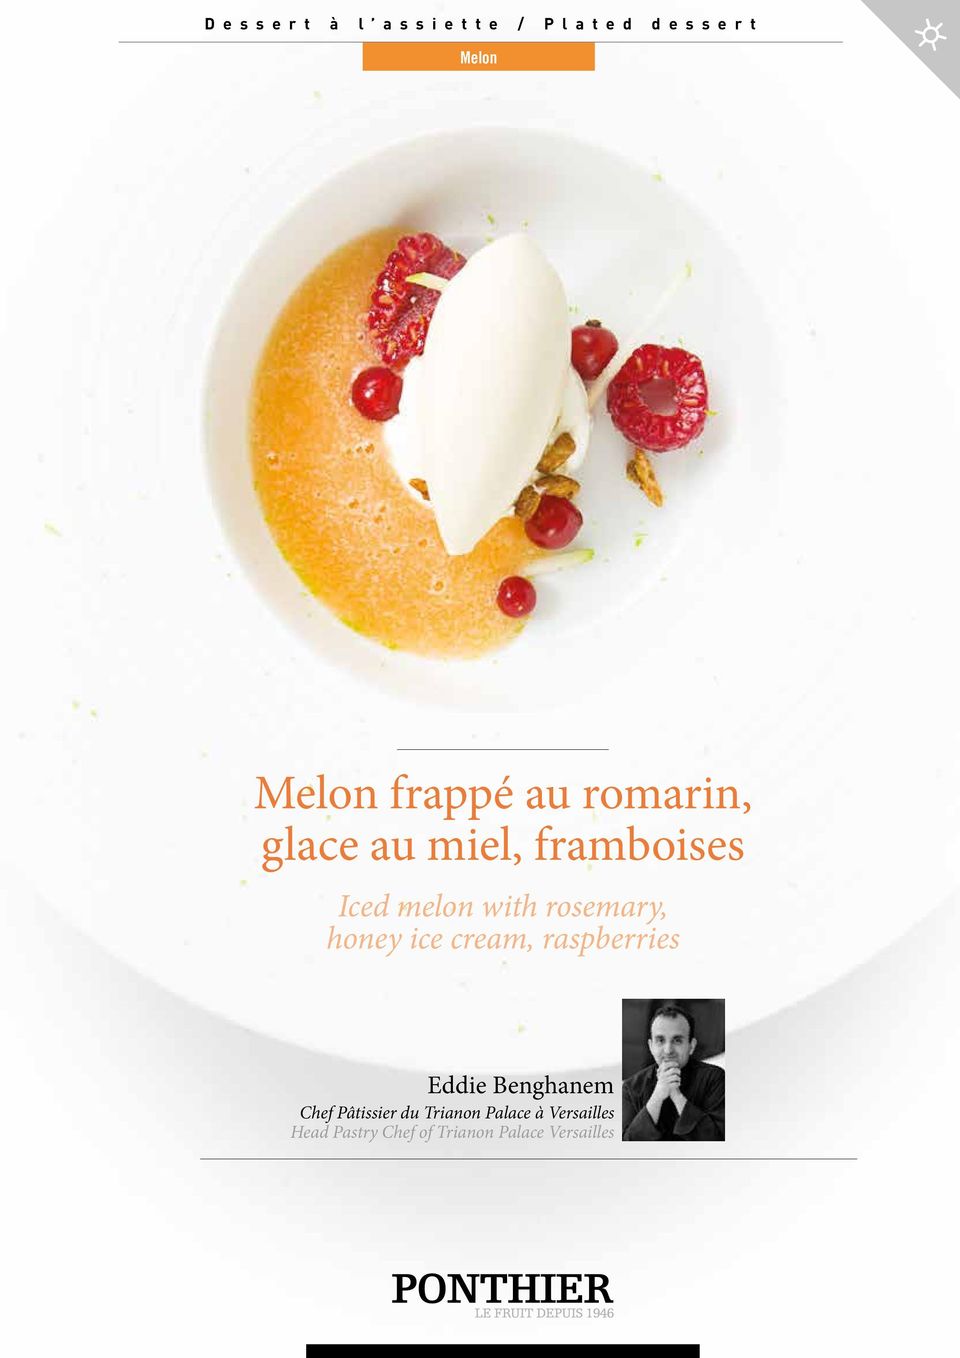 rosemary, honey ice cream, raspberries Eddie Benghanem Chef Pâtissier